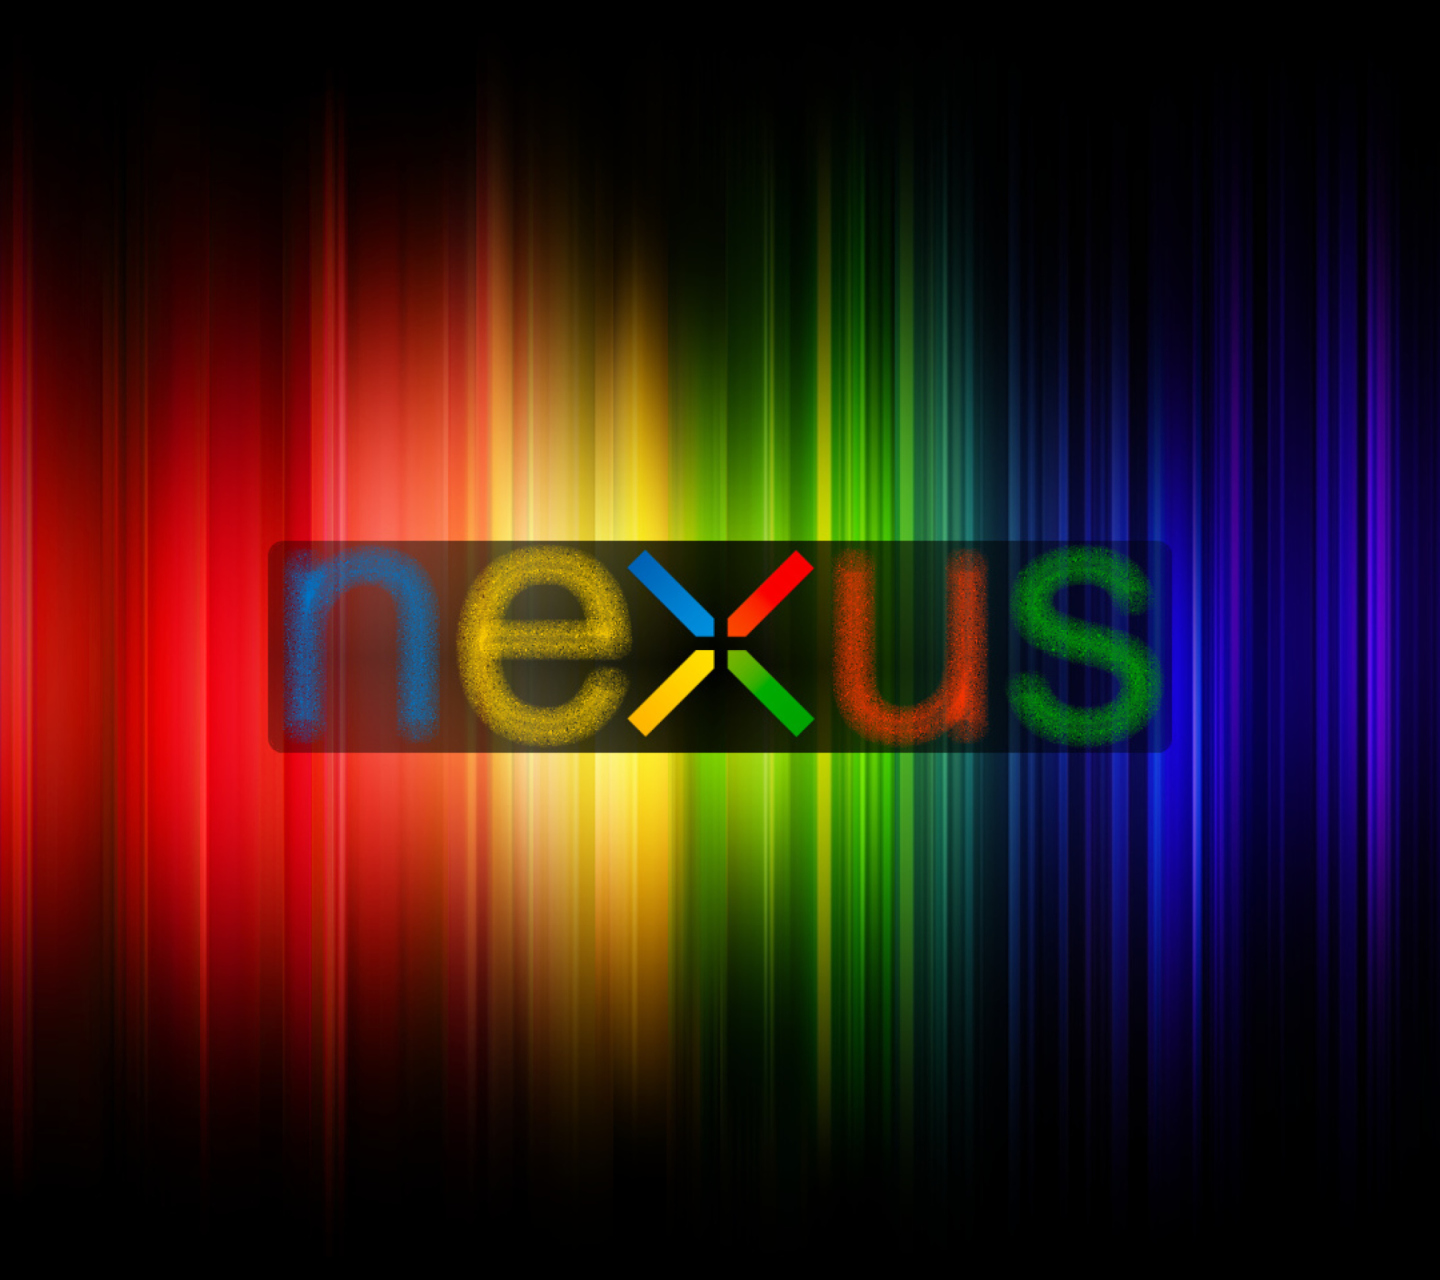 Nexus 7 - Google wallpaper 1440x1280